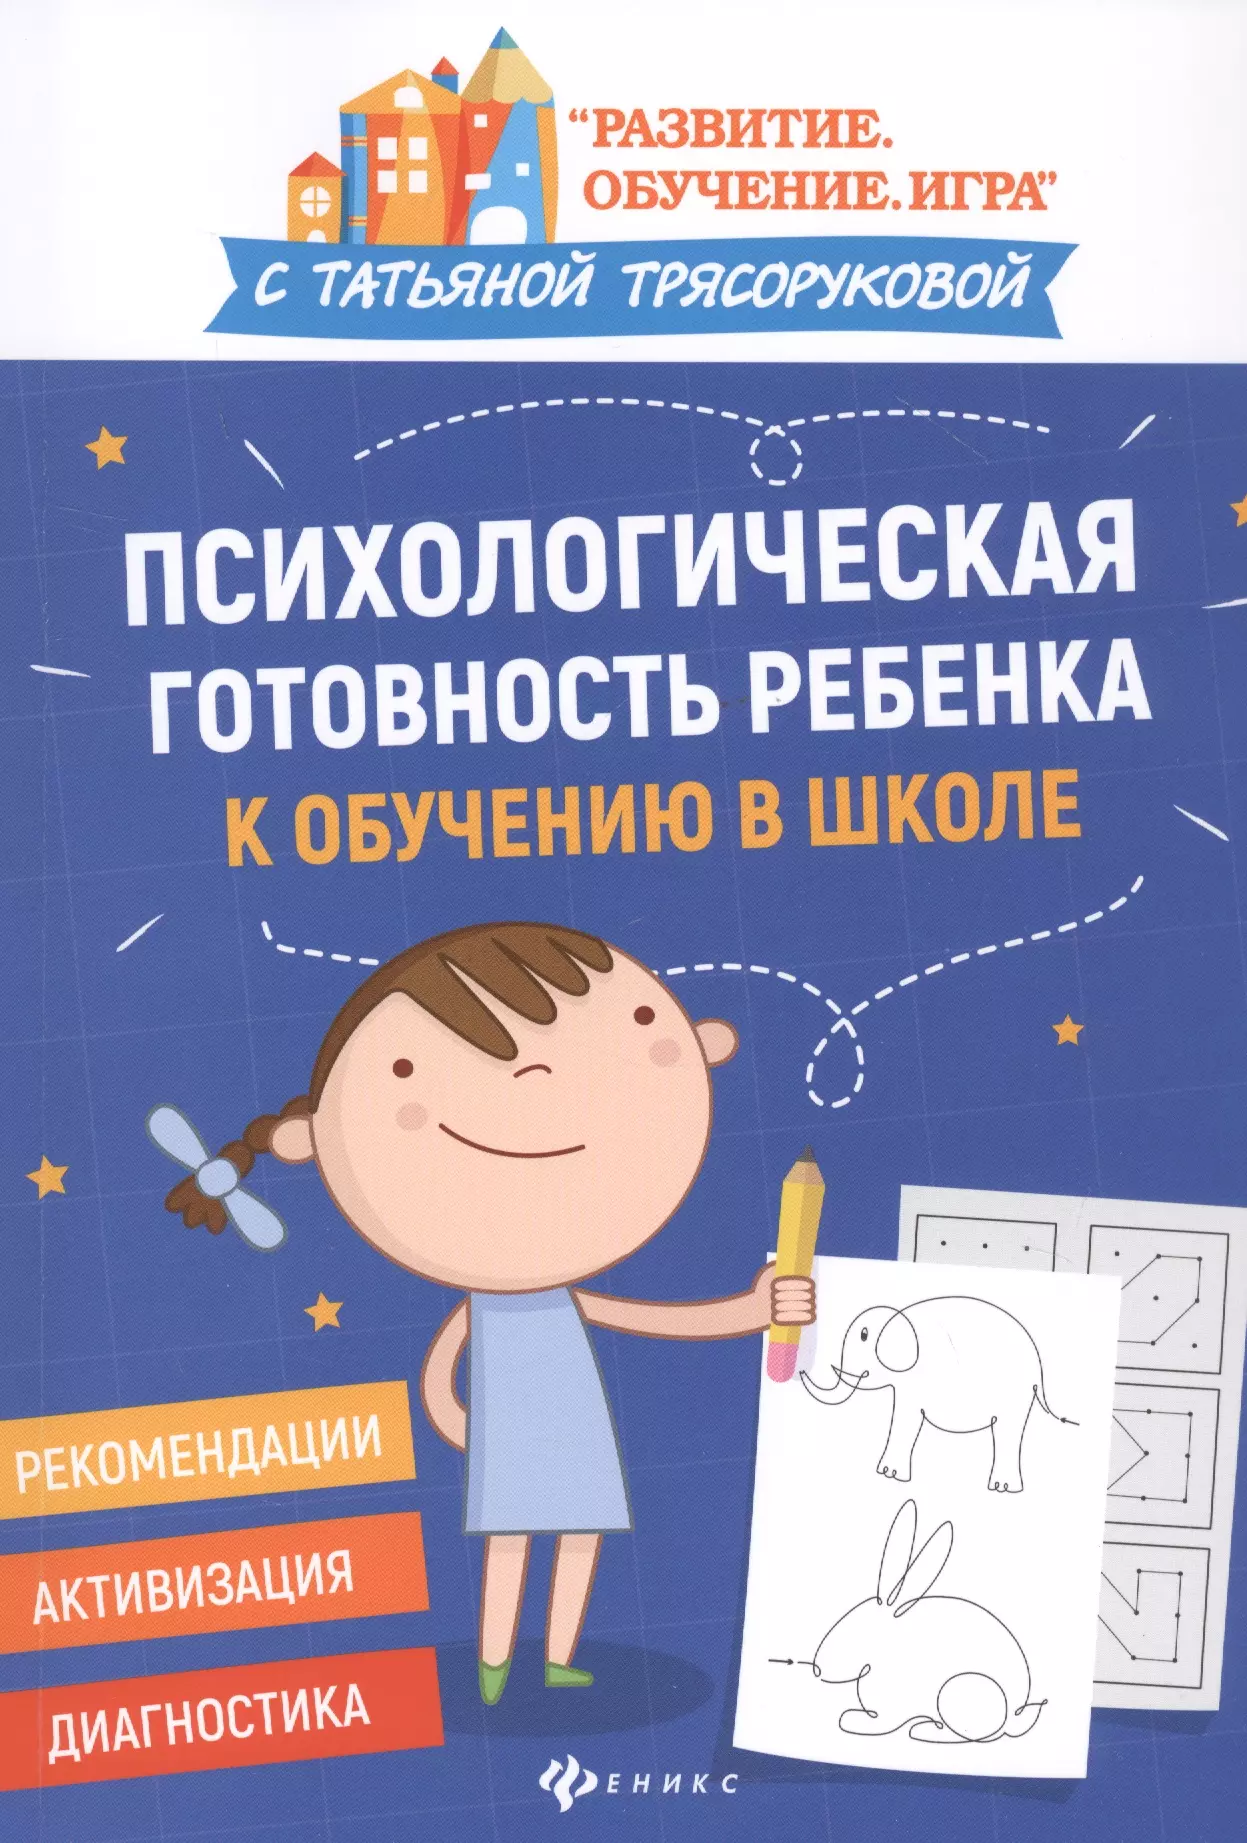 Трясорукова Татьяна Петровна - Психологическая готовность ребенка к обучению в школе